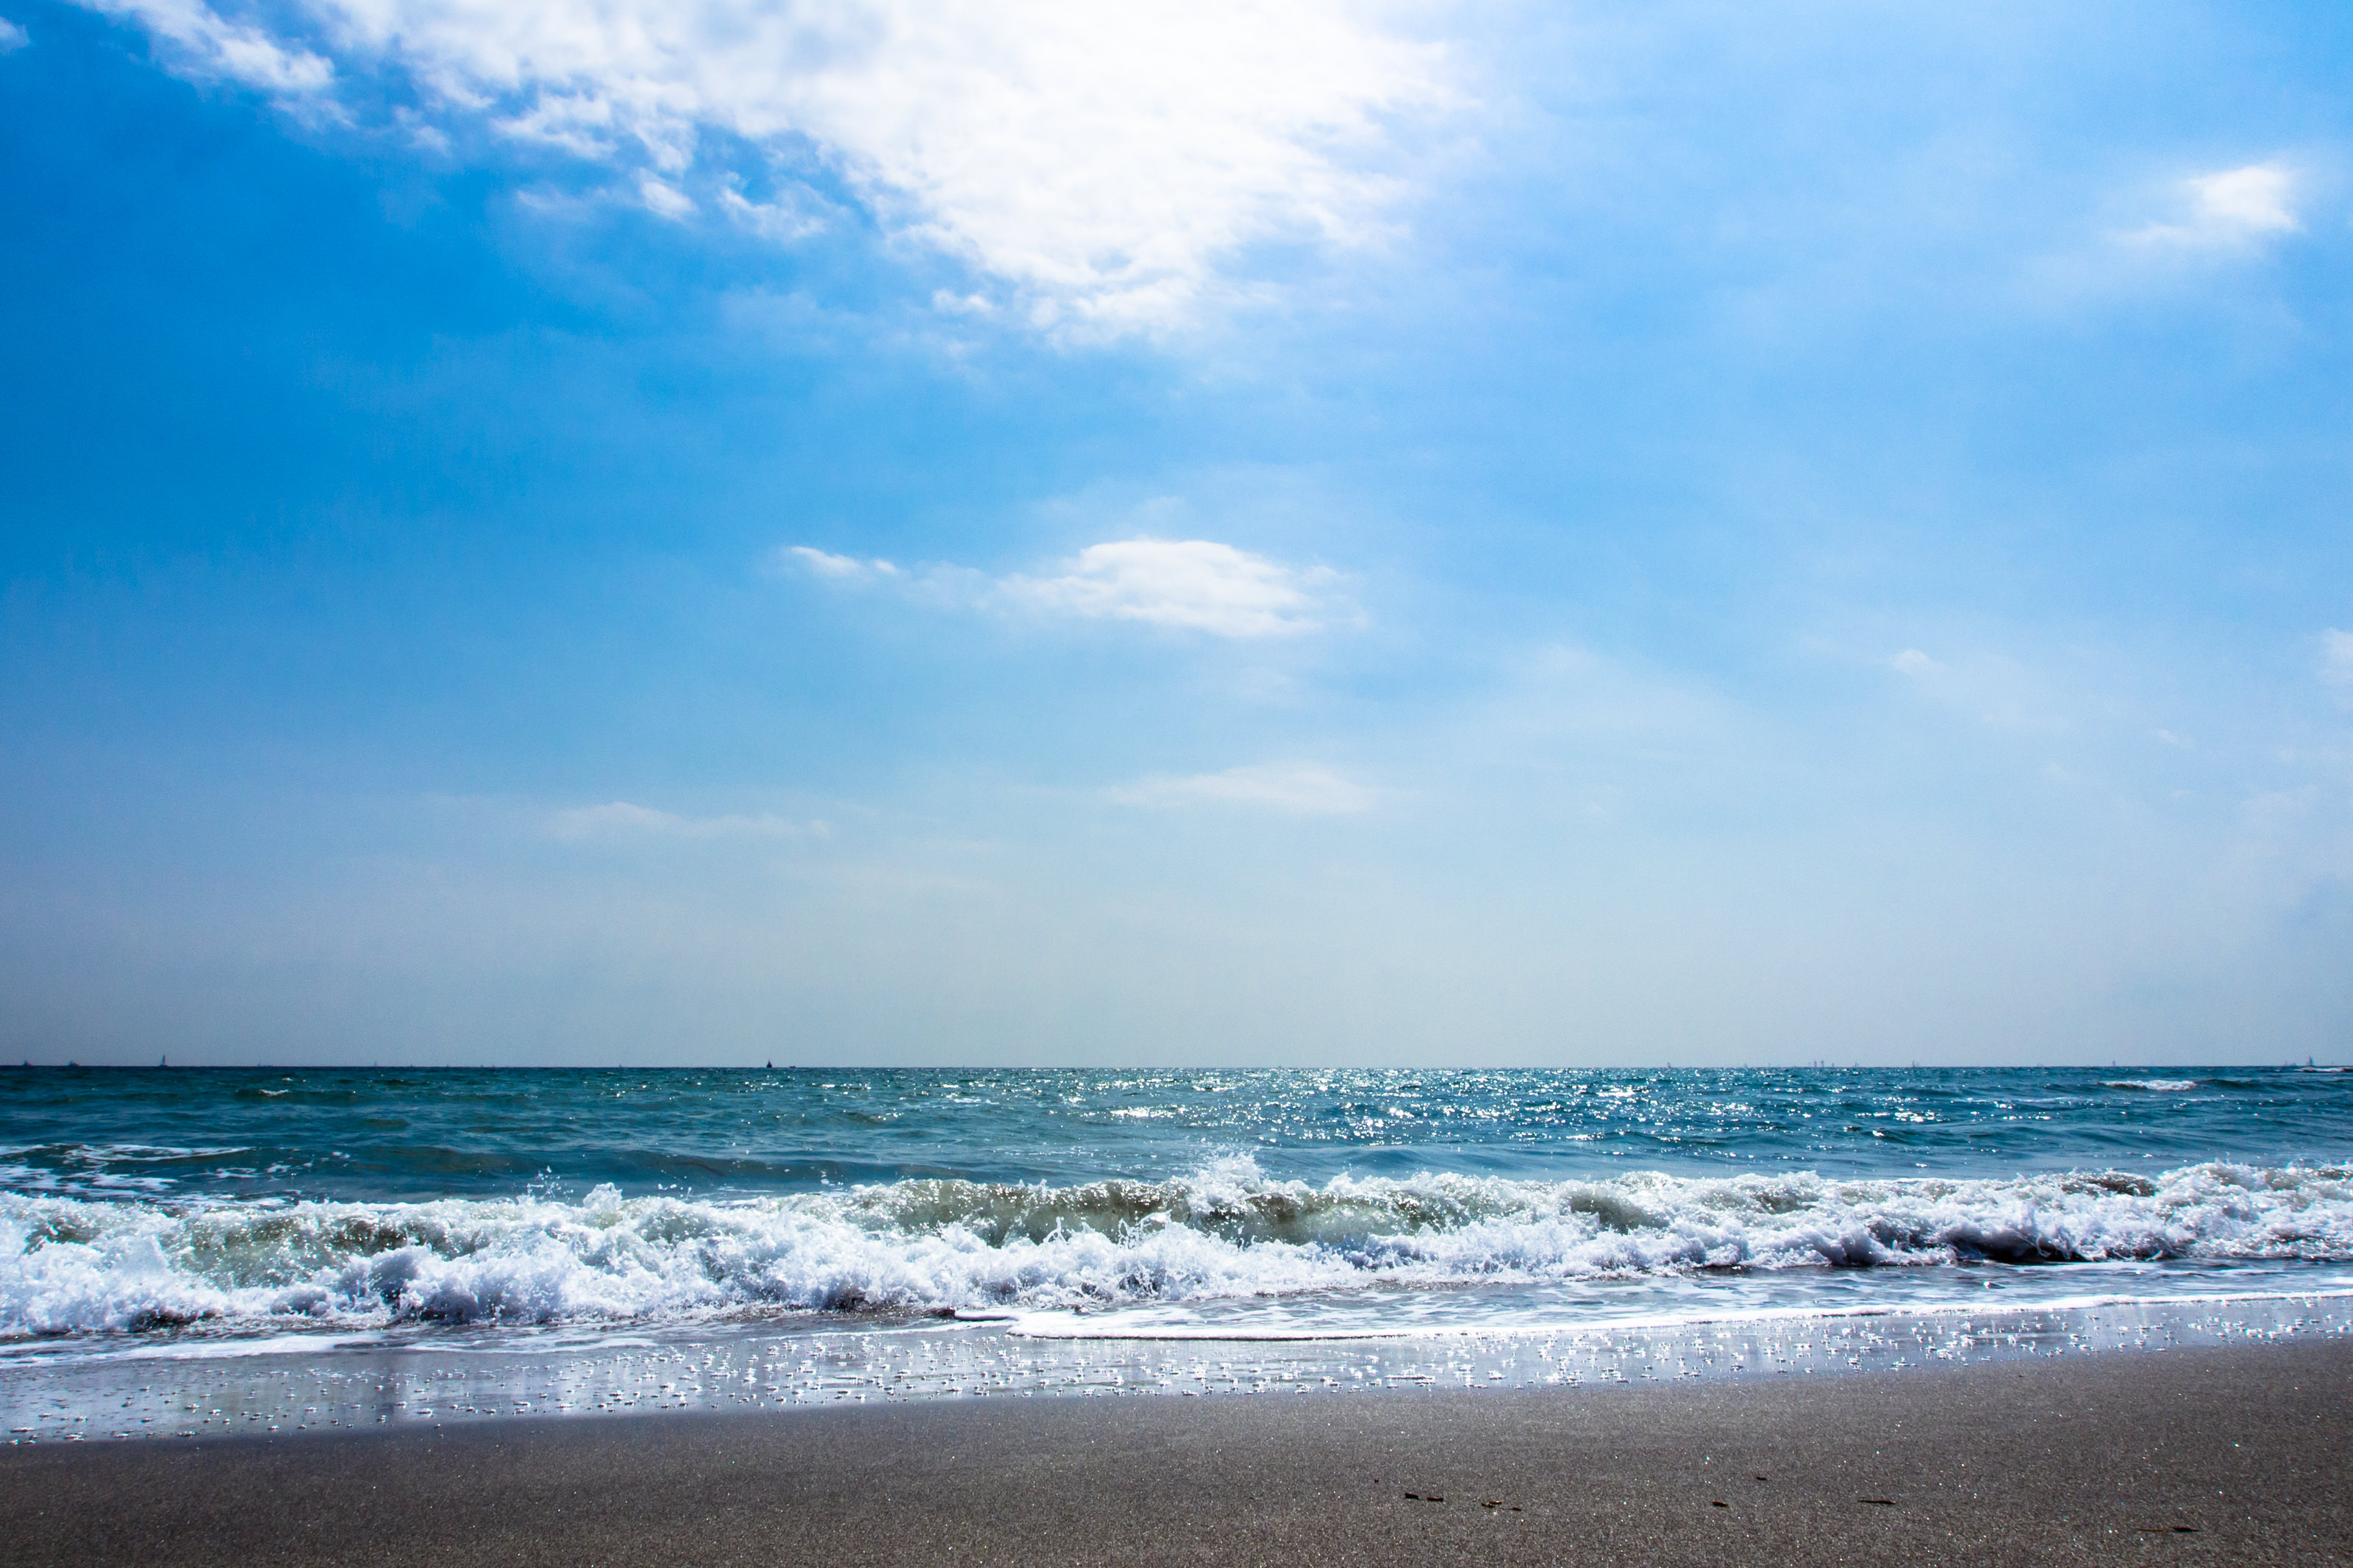 関東から沖縄まで！ 行って良かった海水浴場5選「弓ヶ浜：砂浜がきれい」「御宿：波が静か」